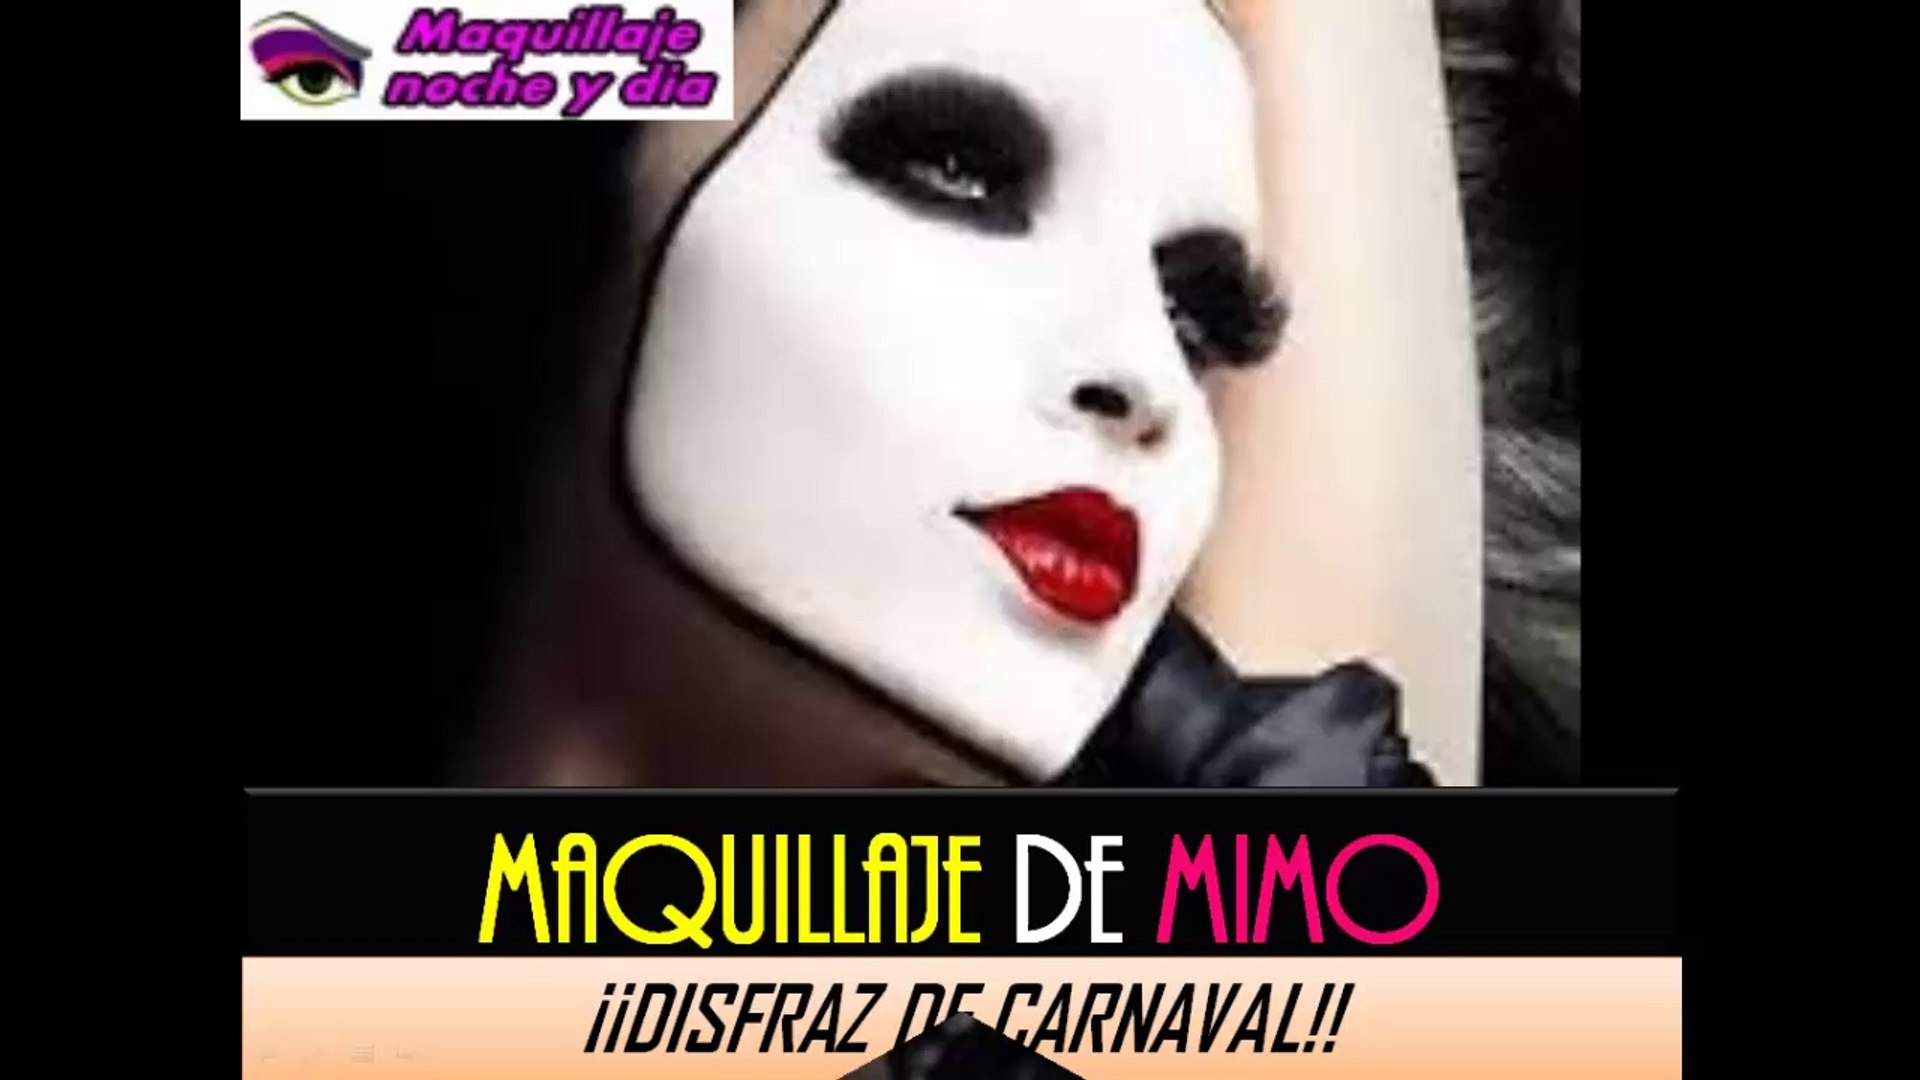 MAQUILLAJE DE MIMO | Como maquillarse en Carnaval - Vídeo Dailymotion